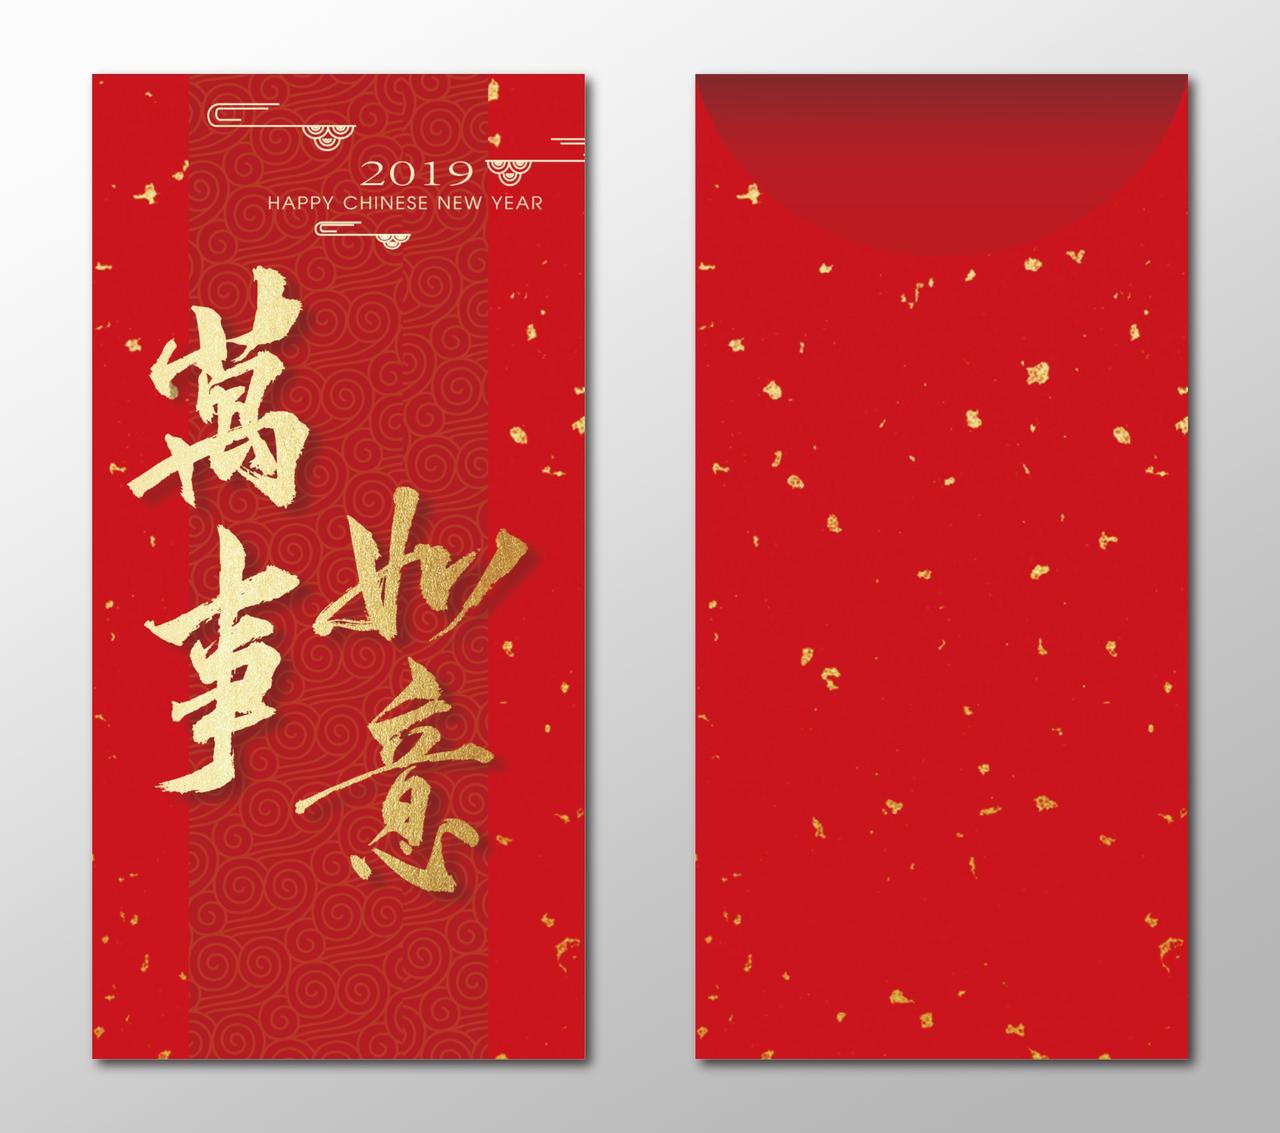 万事如意春节过年利是封新年红包设计